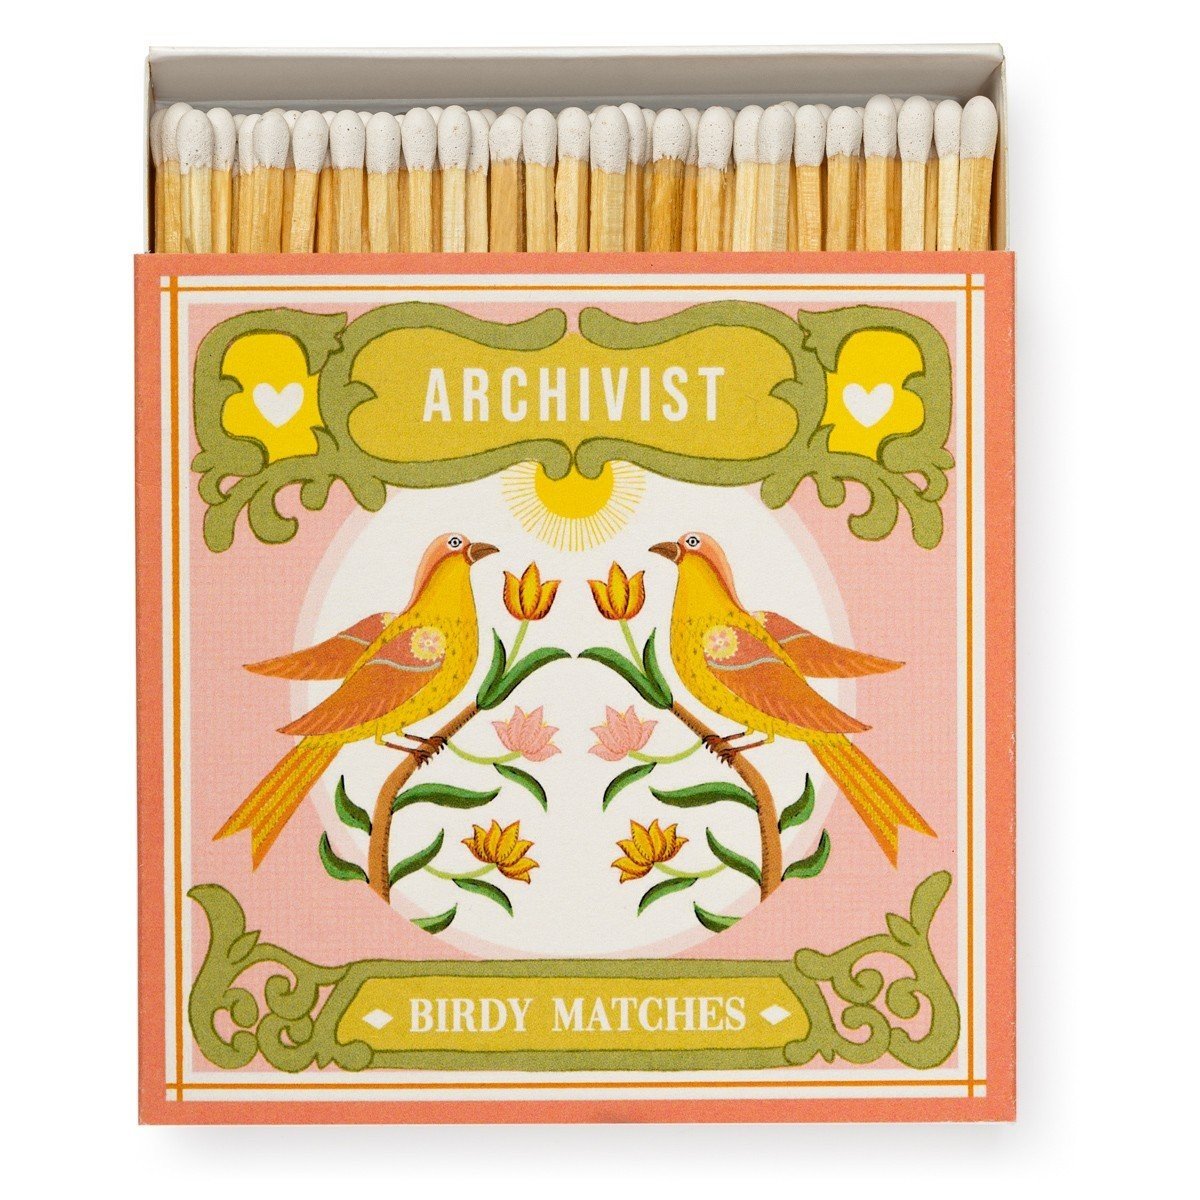 Archivist Luxury Matches -  Ariane's Birdy Matches